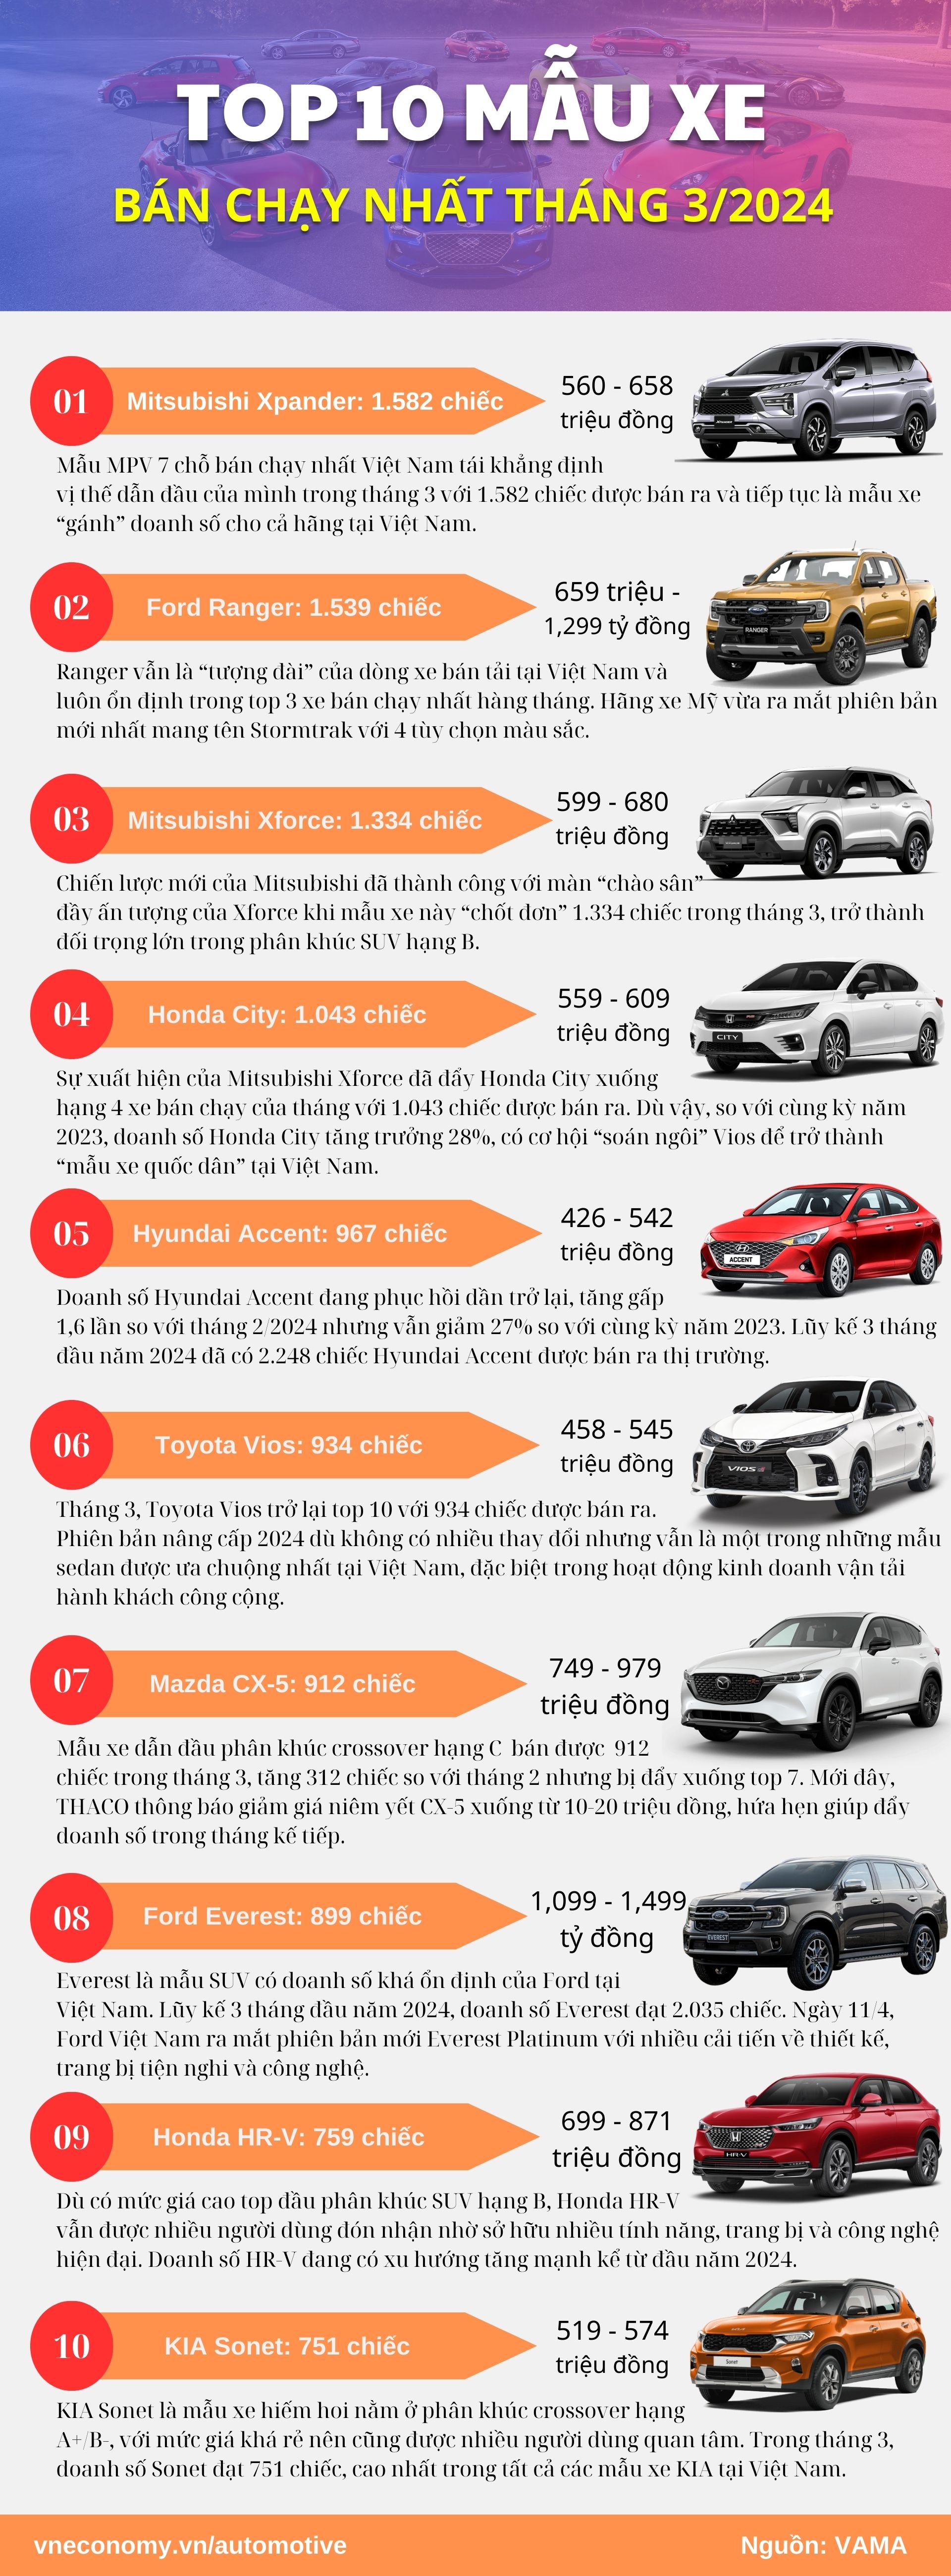 Doanh số 10 mẫu xe đứng đầu thị trường Việt tháng 3/2024